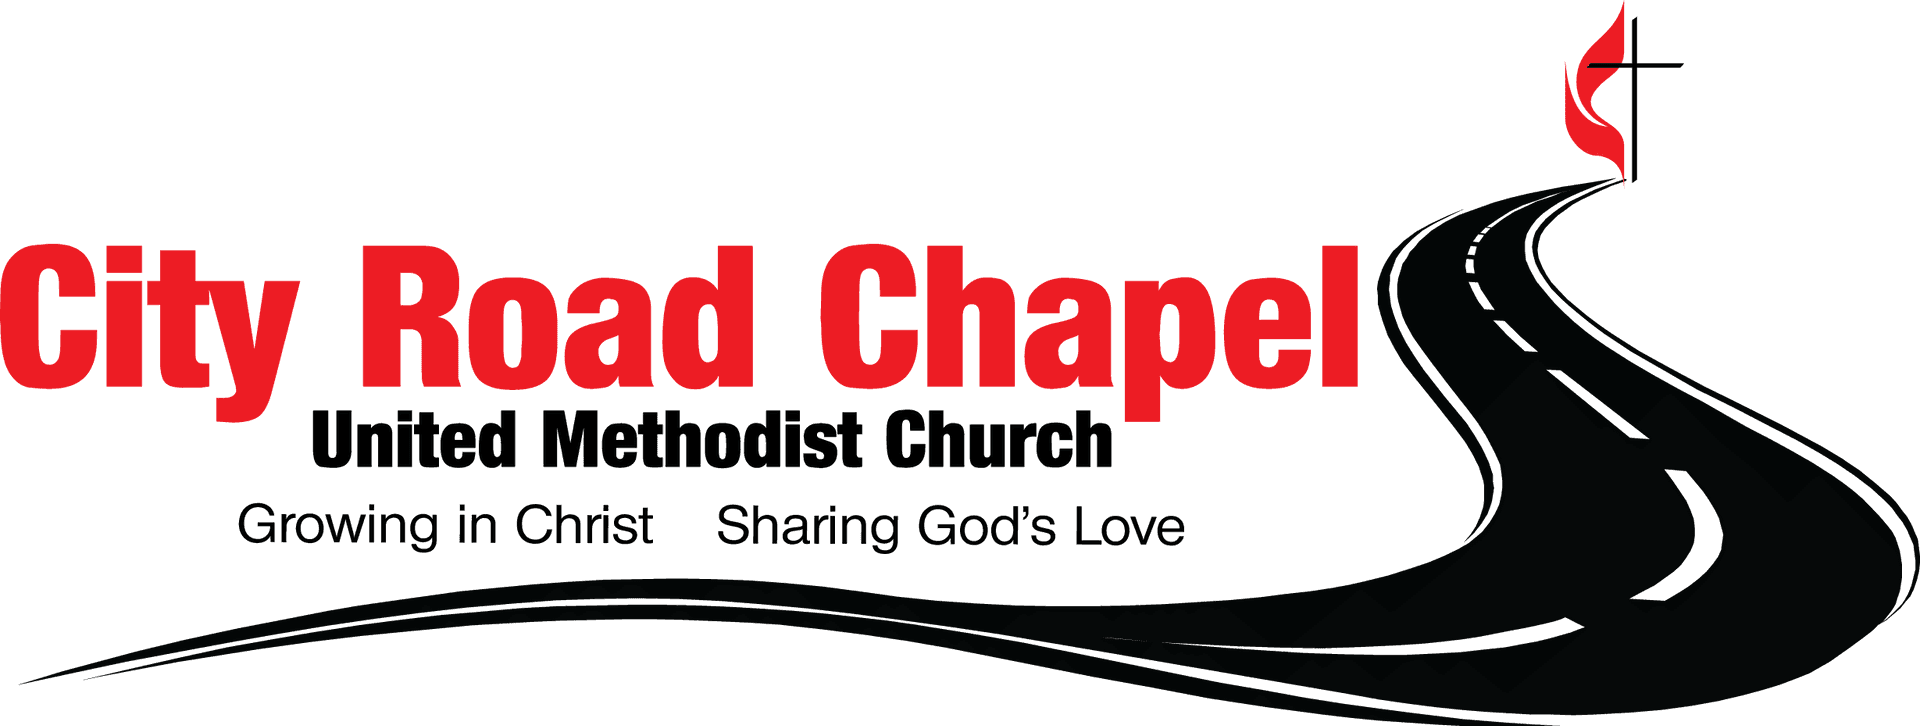 Download City Road Chapel Logo | Wallpapers.com